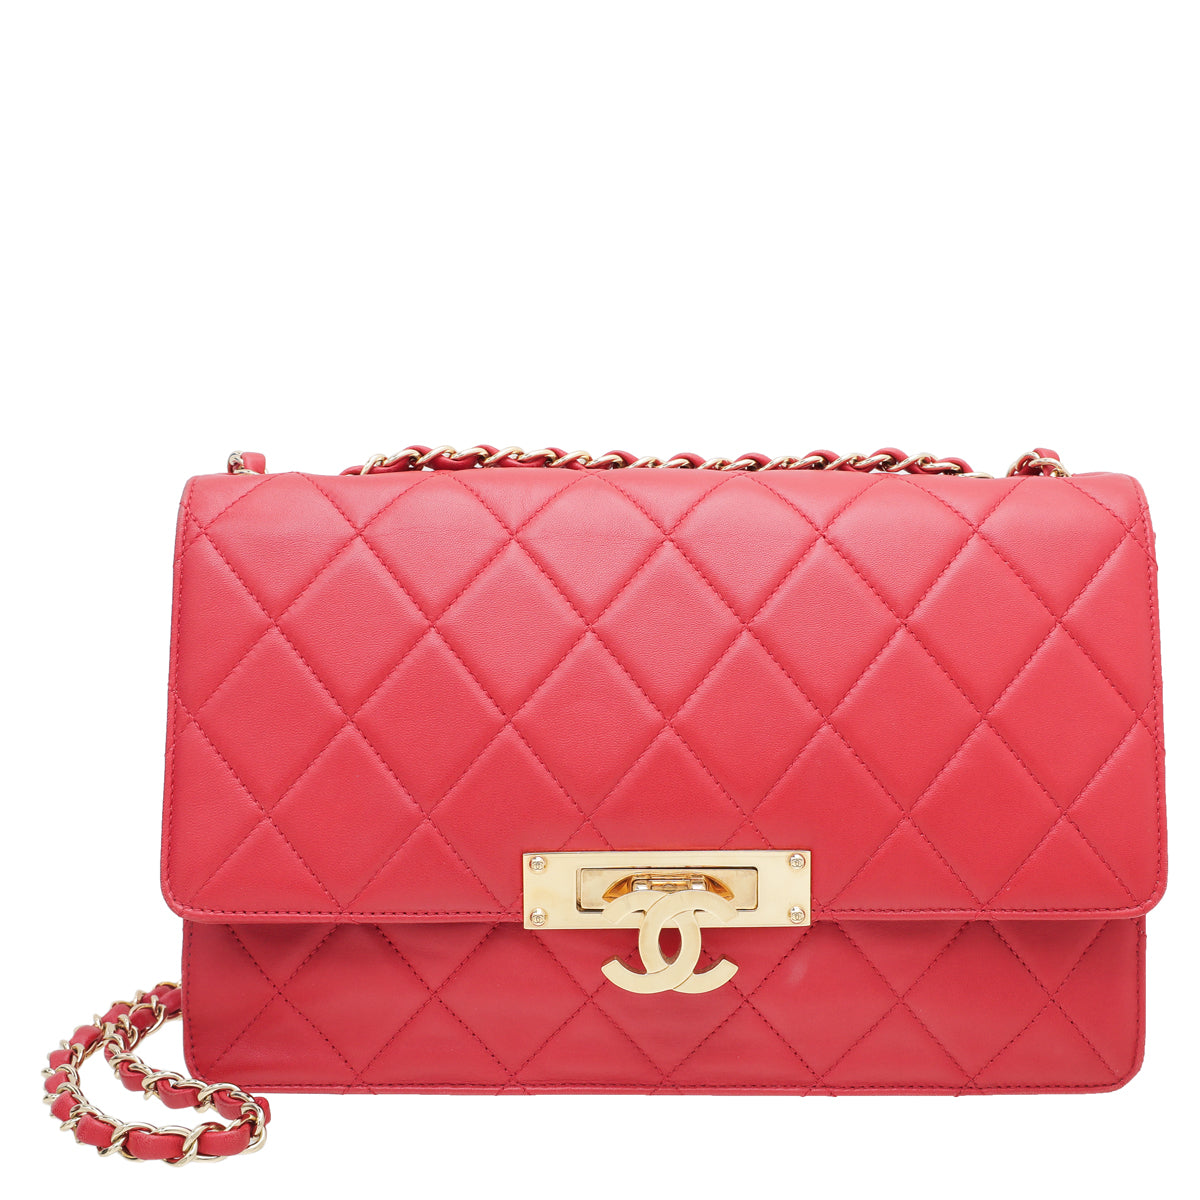 Chanel Red Golden Class Flap Bag